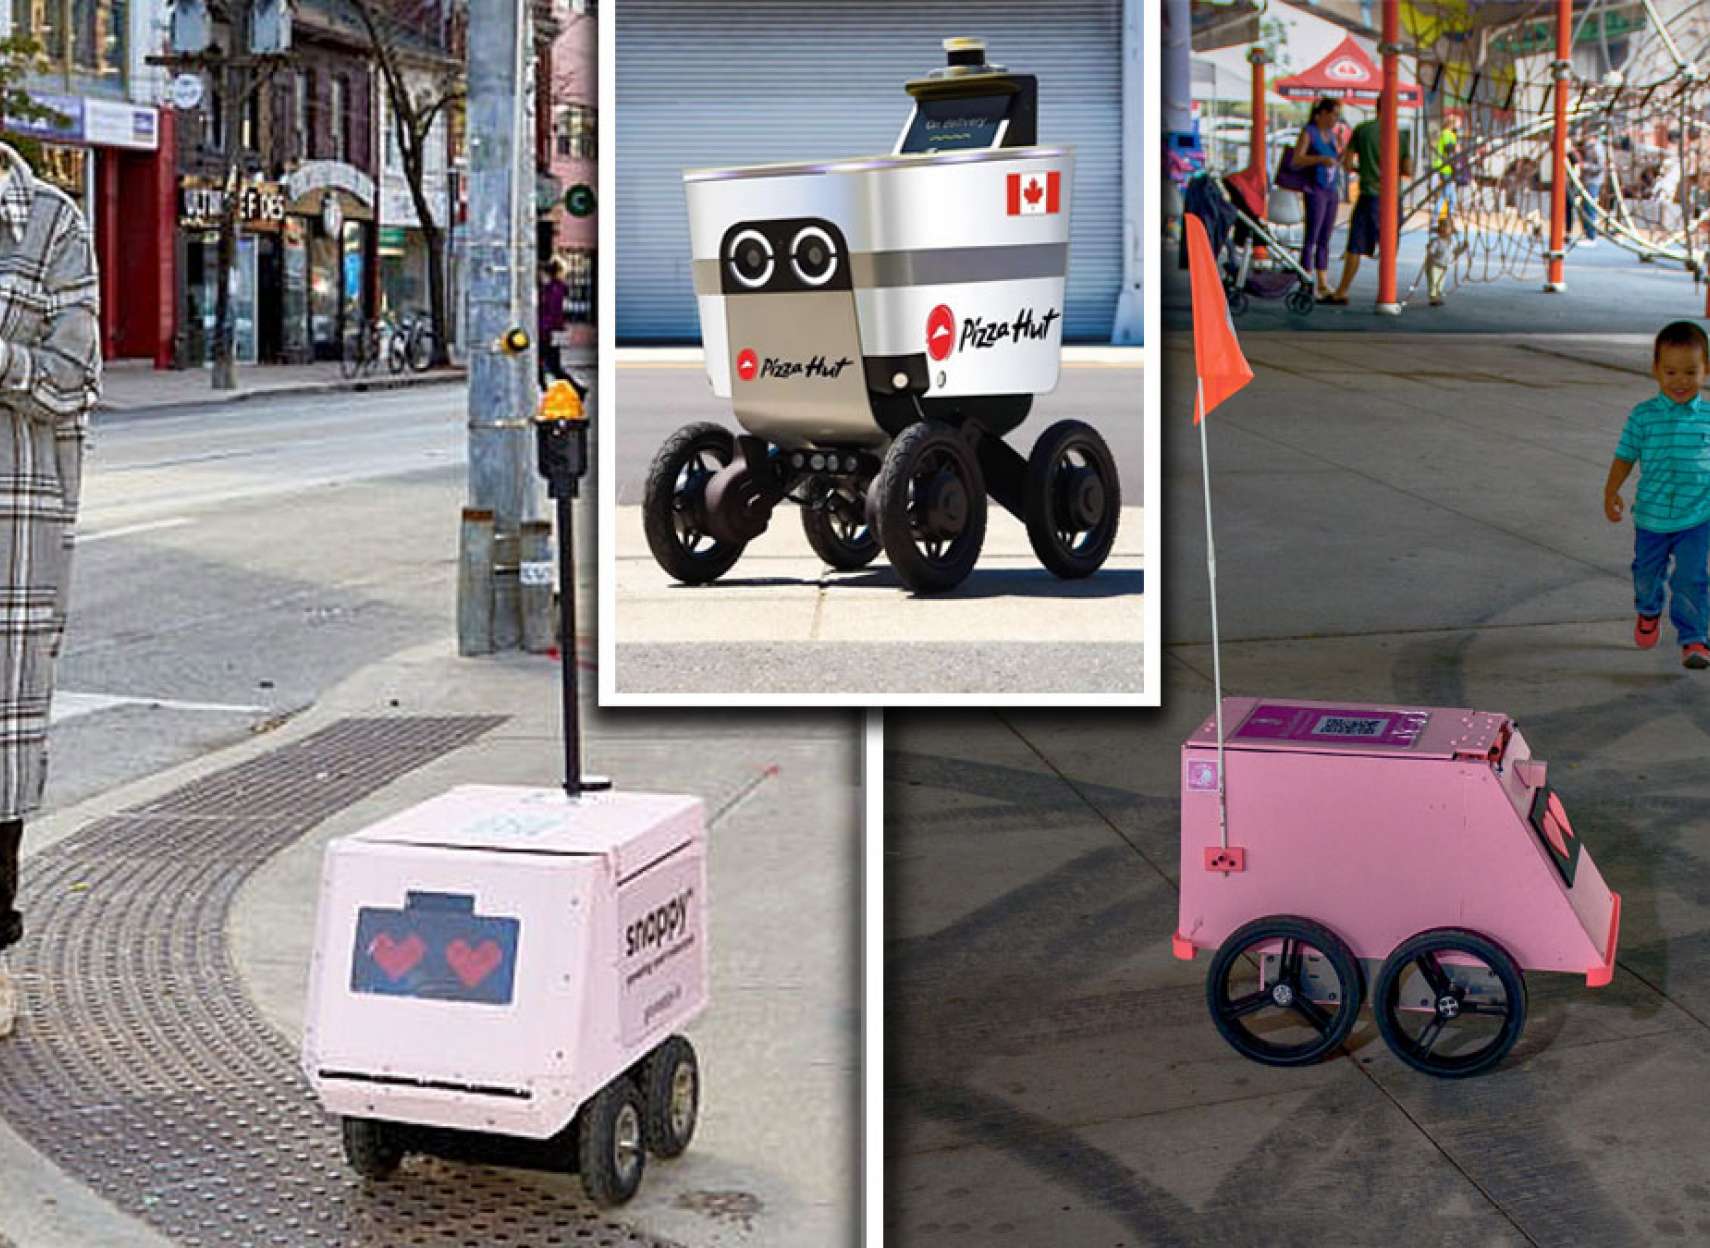 خبر-کانادا-این-روبات-غذا-رسان-خیابان-دیدید-جا-نخورید-غذا-در-راه-است